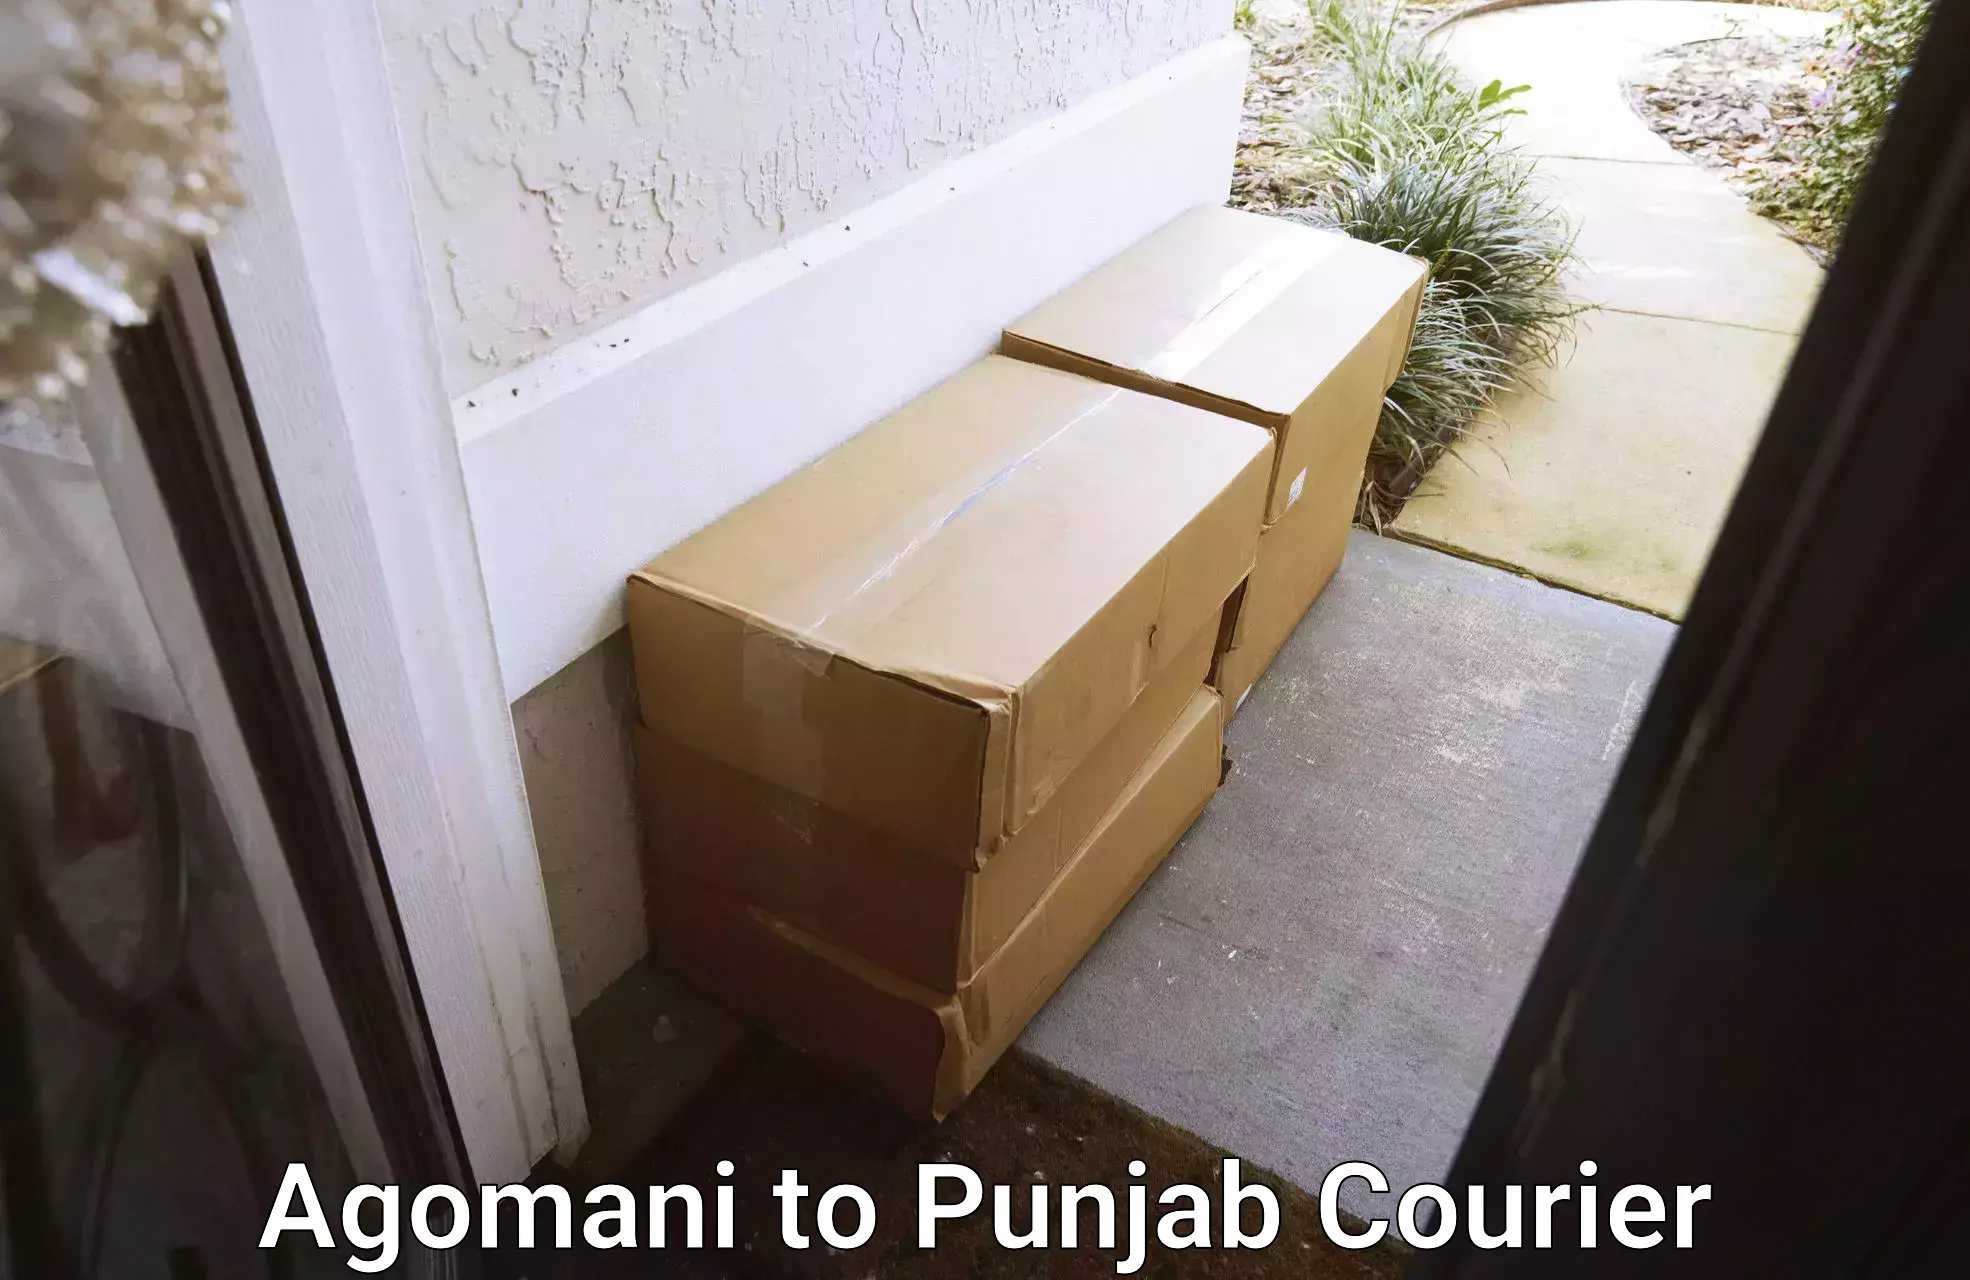 Global shipping solutions Agomani to Punjab